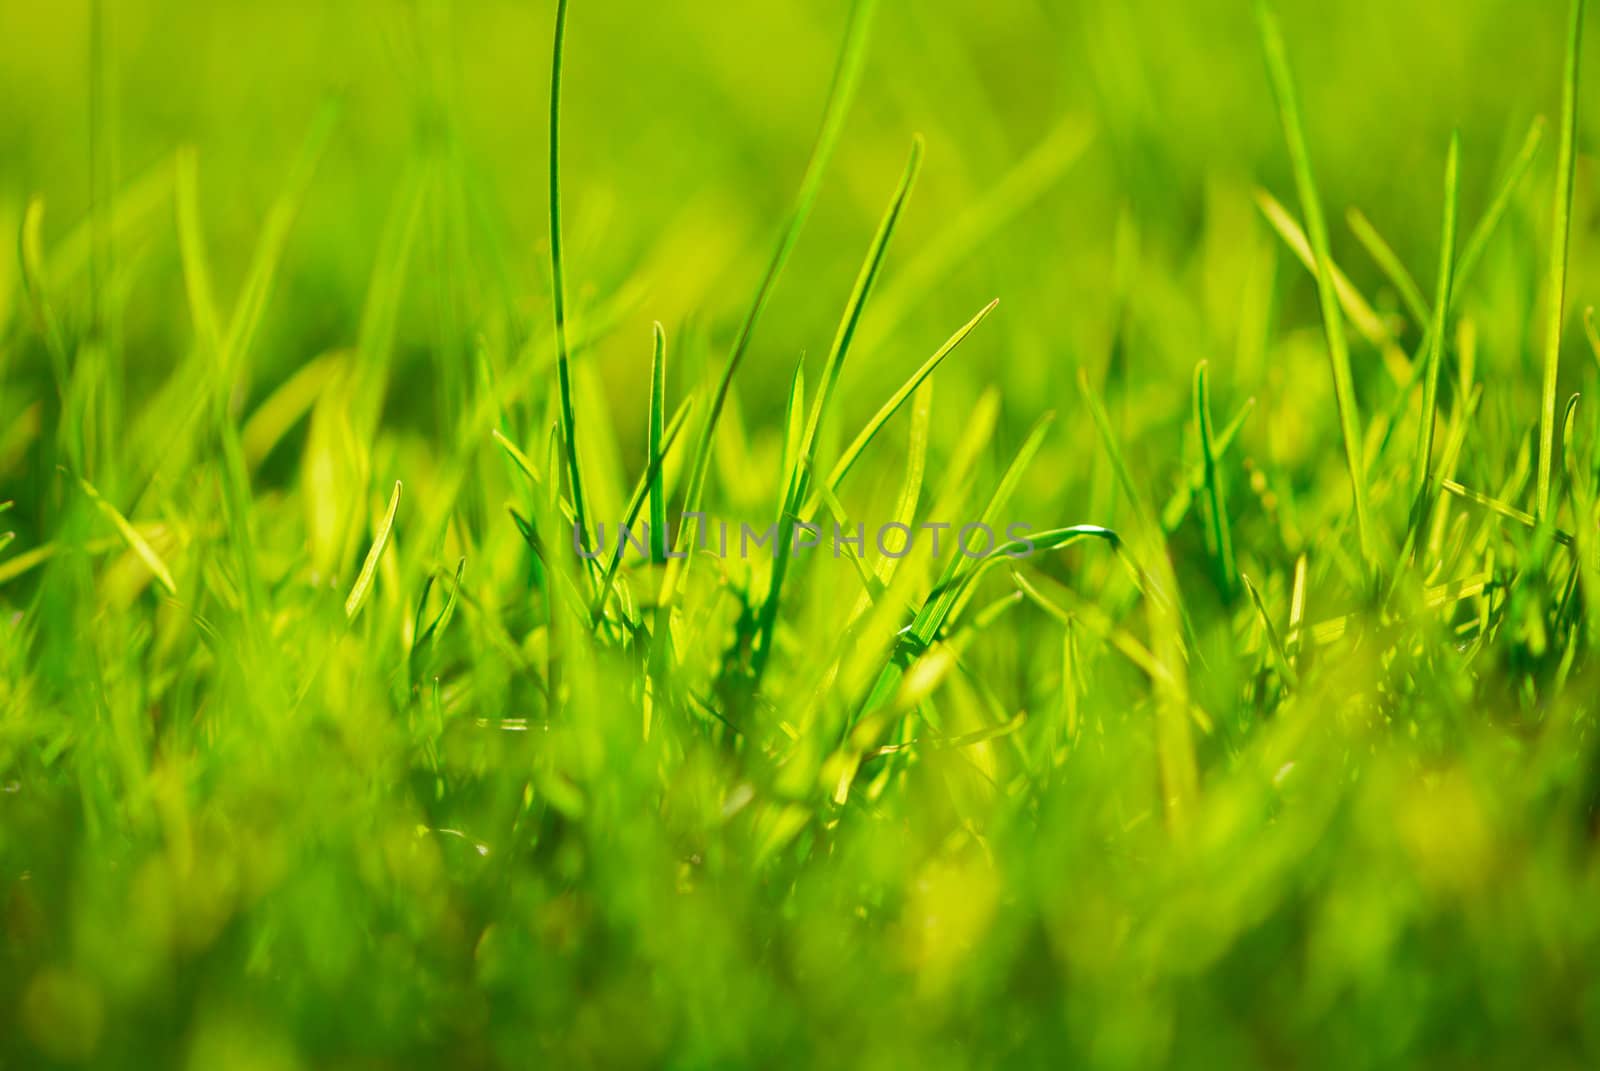 Grass by Olinkau